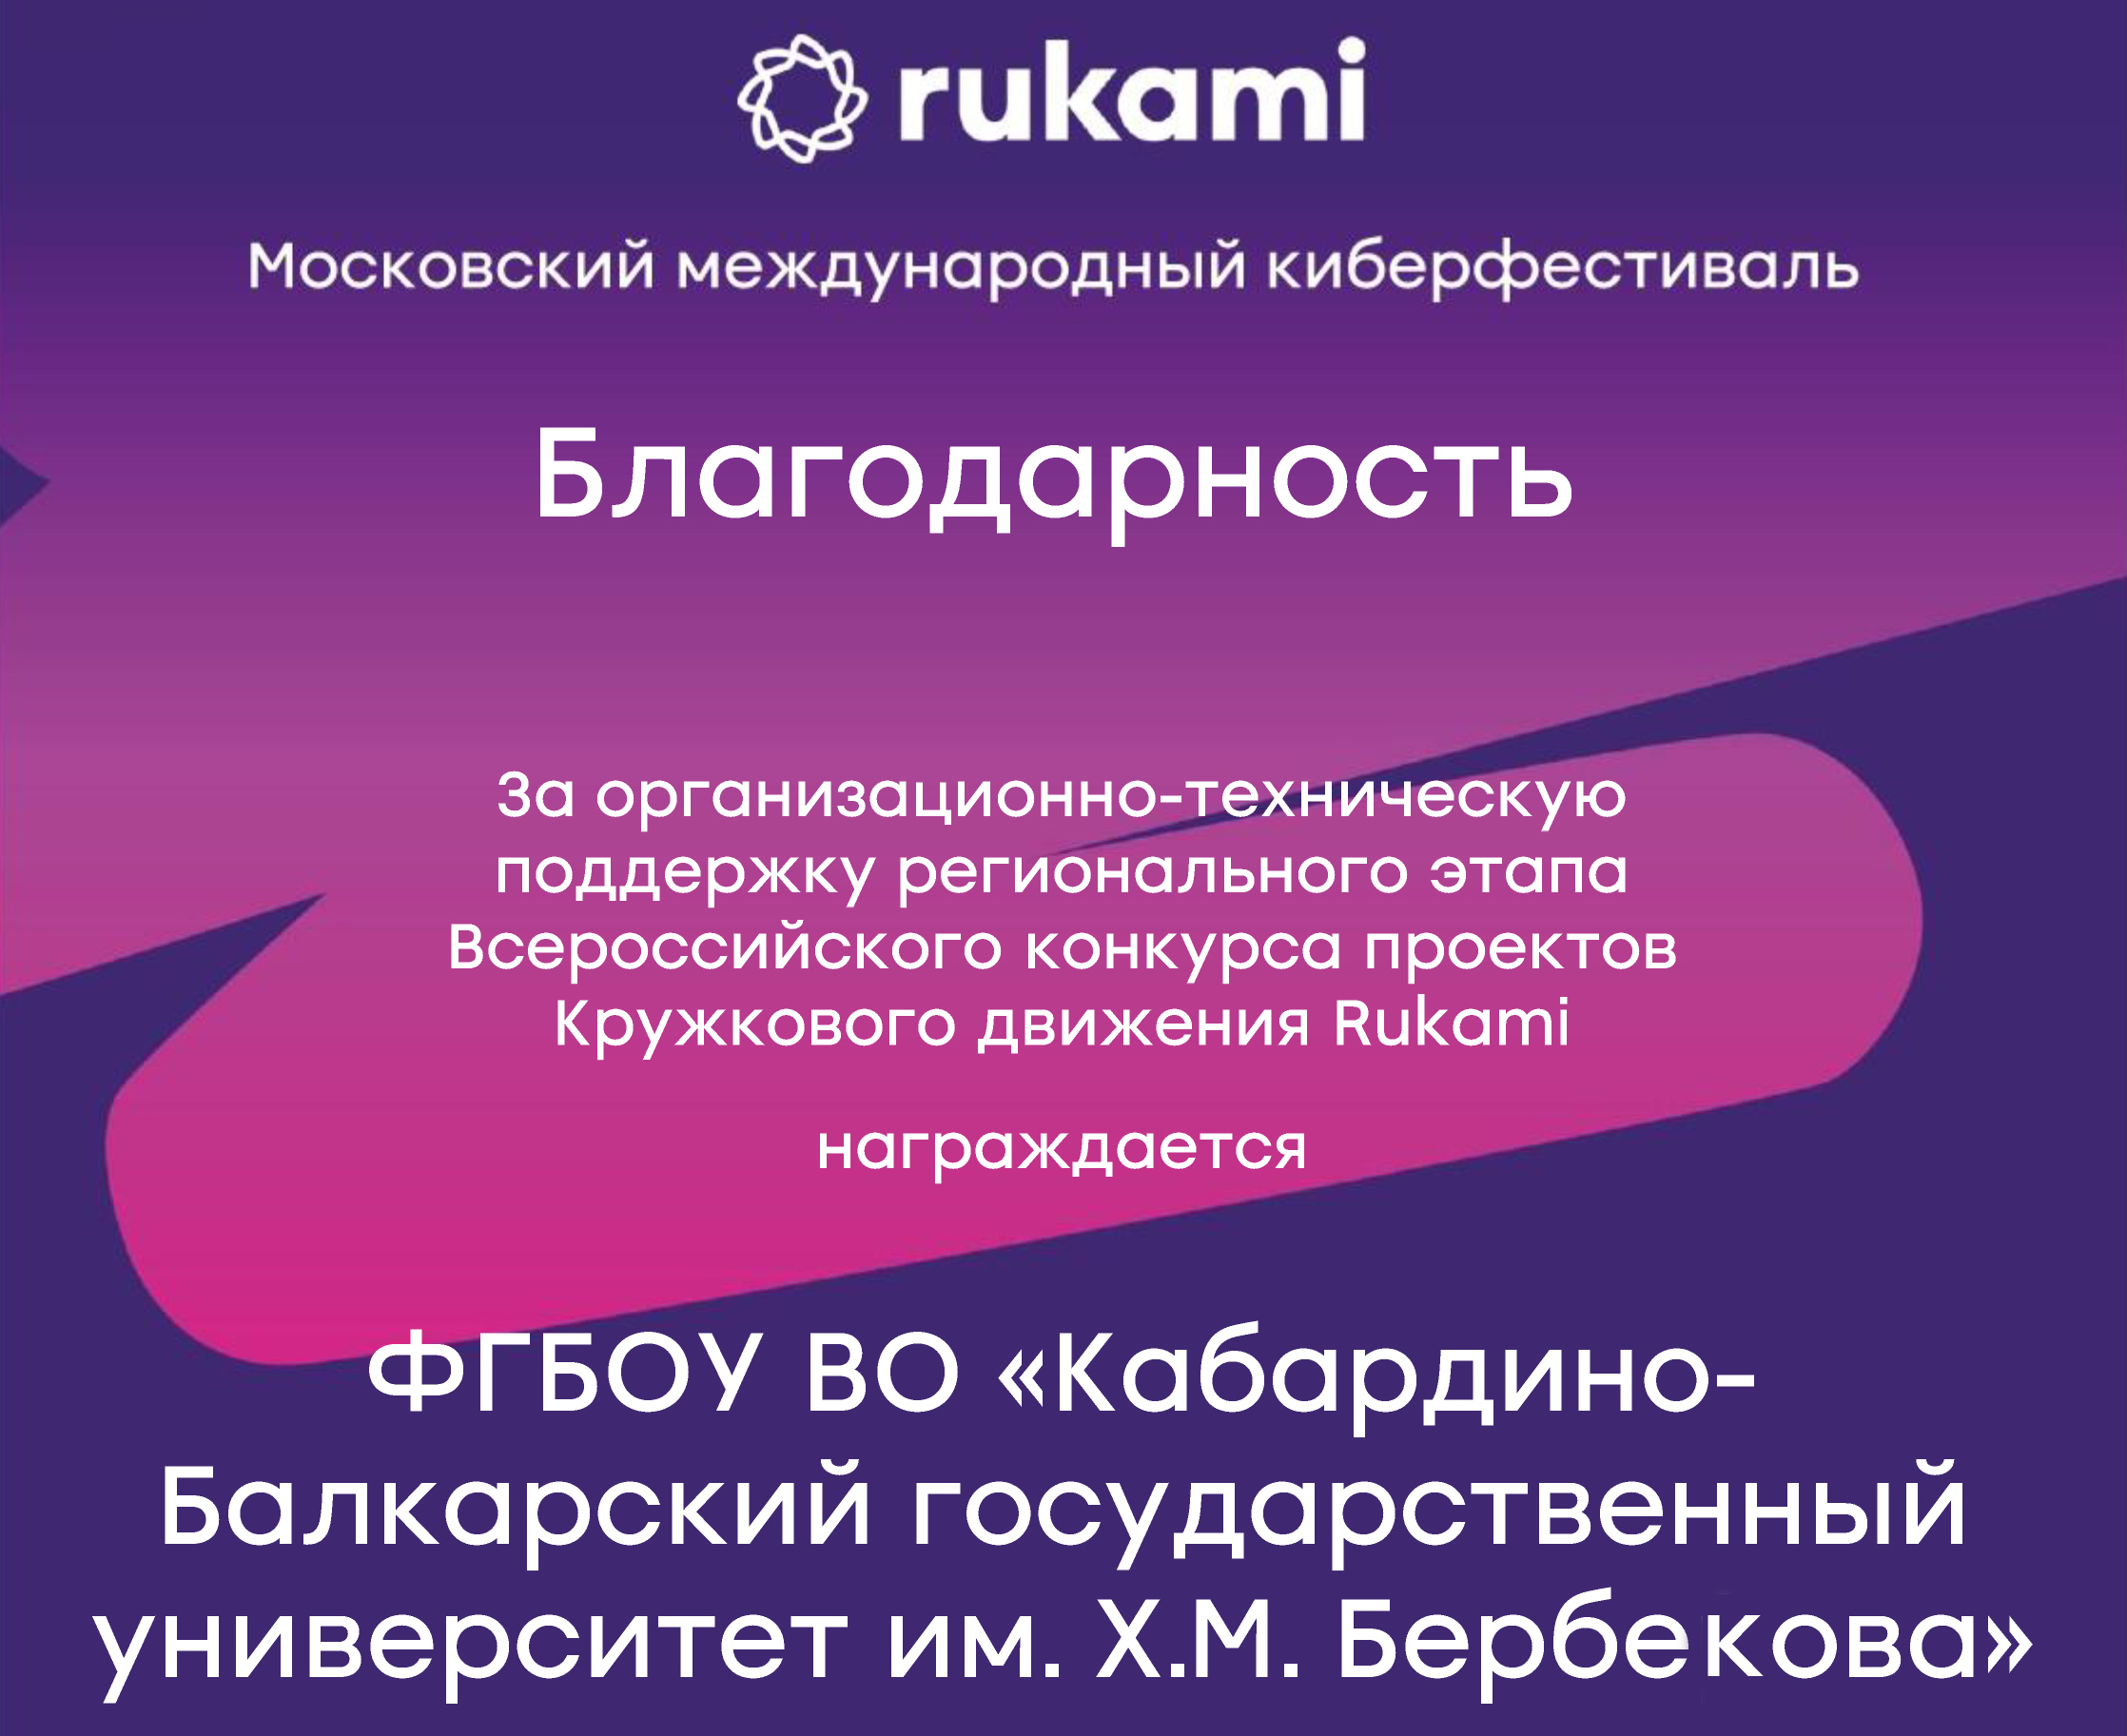 Организаторы киберфестиваля RUKAMI выразили благодарность КБГУ